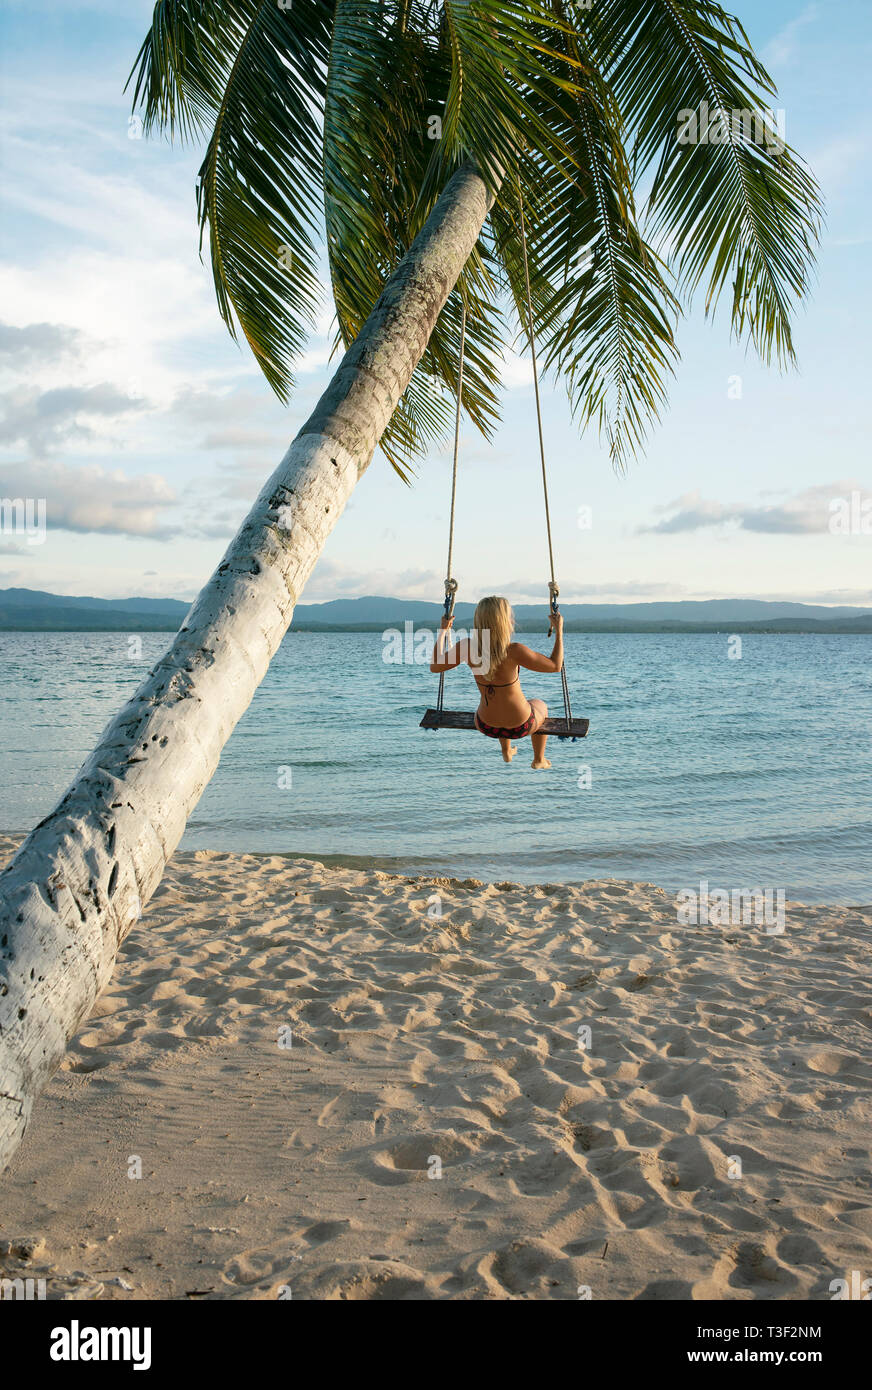 Vista trasera de la hembra en una playa swing conectado a una palmera en las islas de San Blas. Destino de viajes, estilo de vida / Concepto de vacaciones. Panamá, Oct 2018 Foto de stock